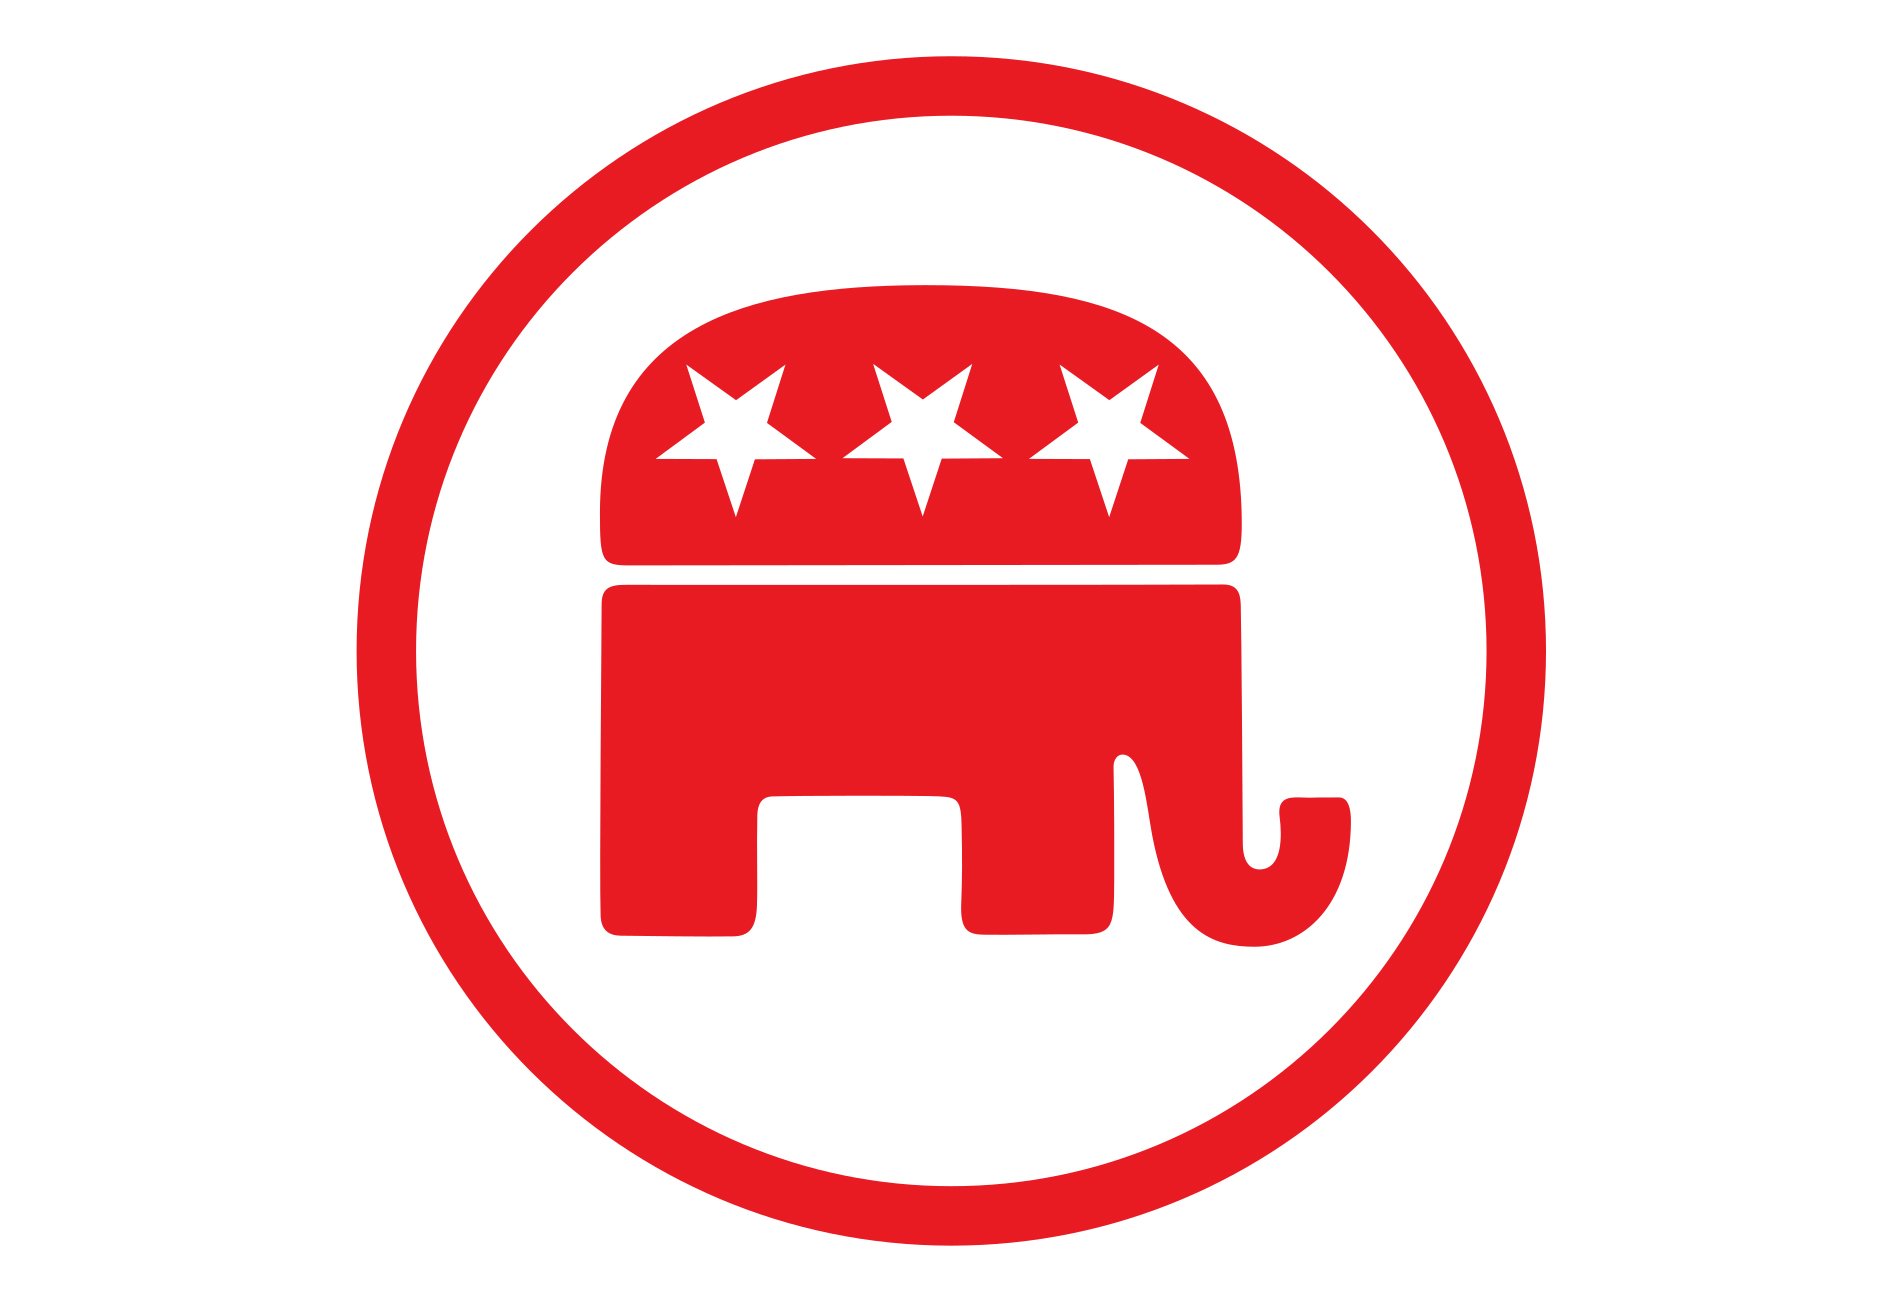 Республиканская партия идеология. 1854 Основана Республиканская партия США. Республиканская партия США логотип. Республиканская партия США символ партии. Флаг республиканской партии США.